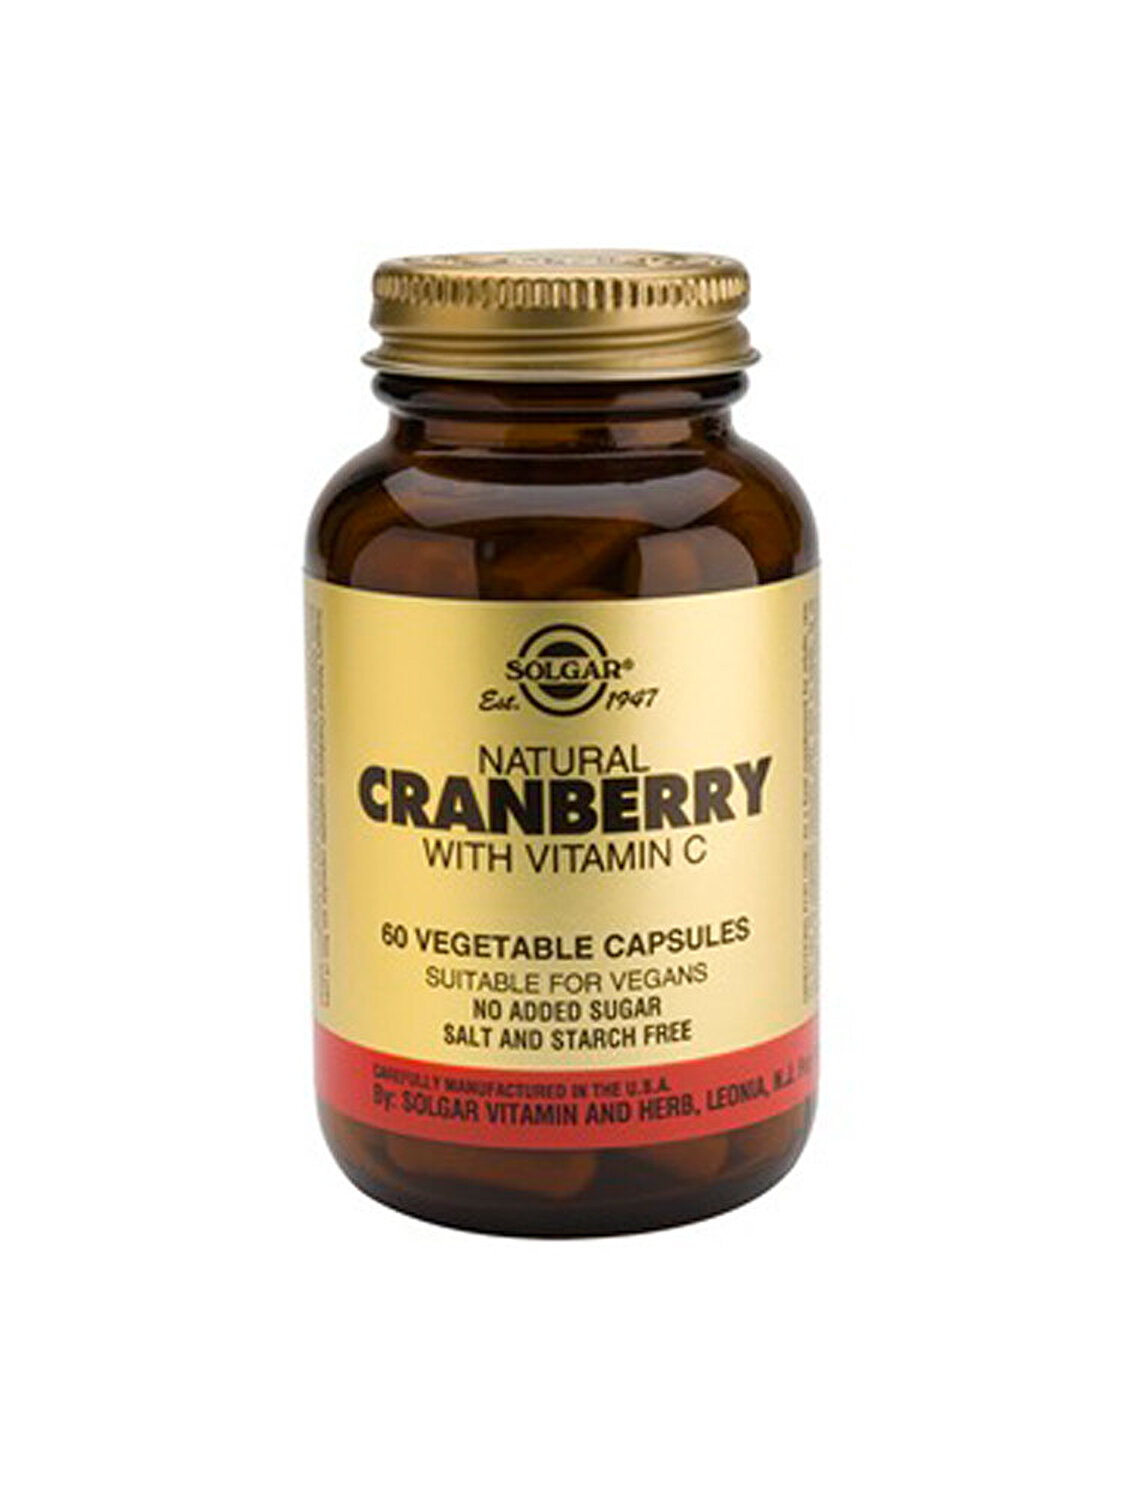 Dezinfectante urinare - Merișoare naturale cu vitamina C (Cranberry Extract with Vitamin C), 60 capsule, Solgar, sinapis.ro